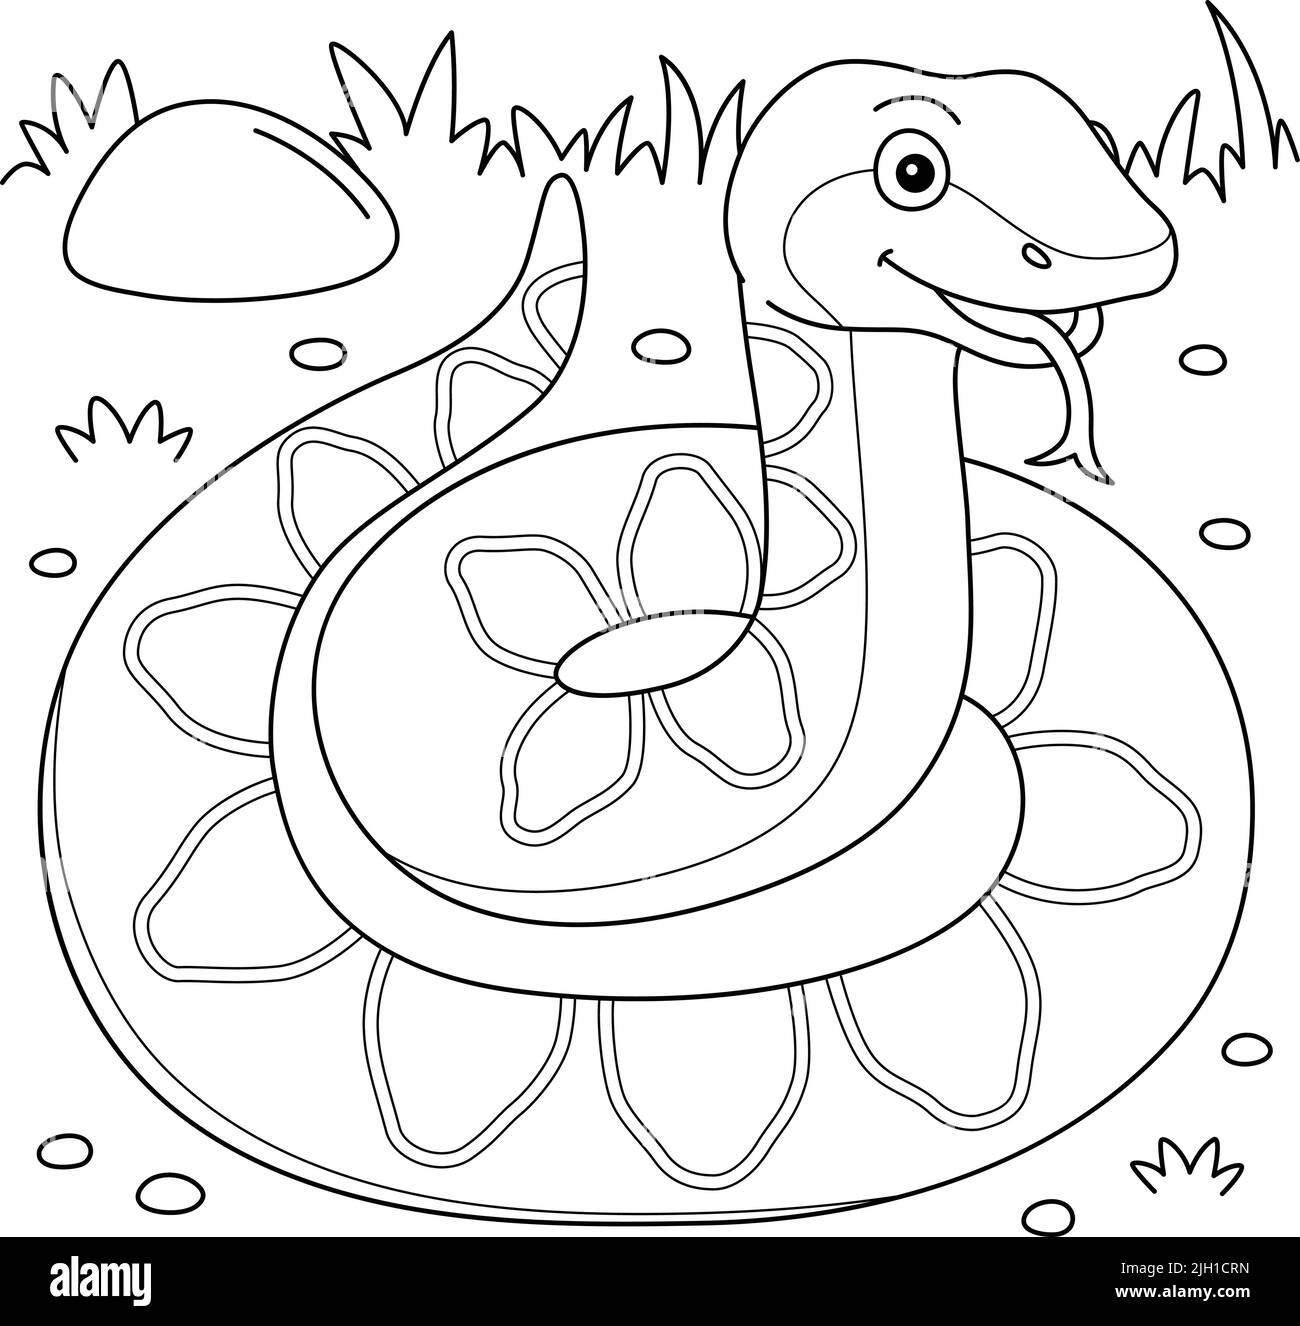 Viper Animal Coloring Page for Kids Illustrazione Vettoriale